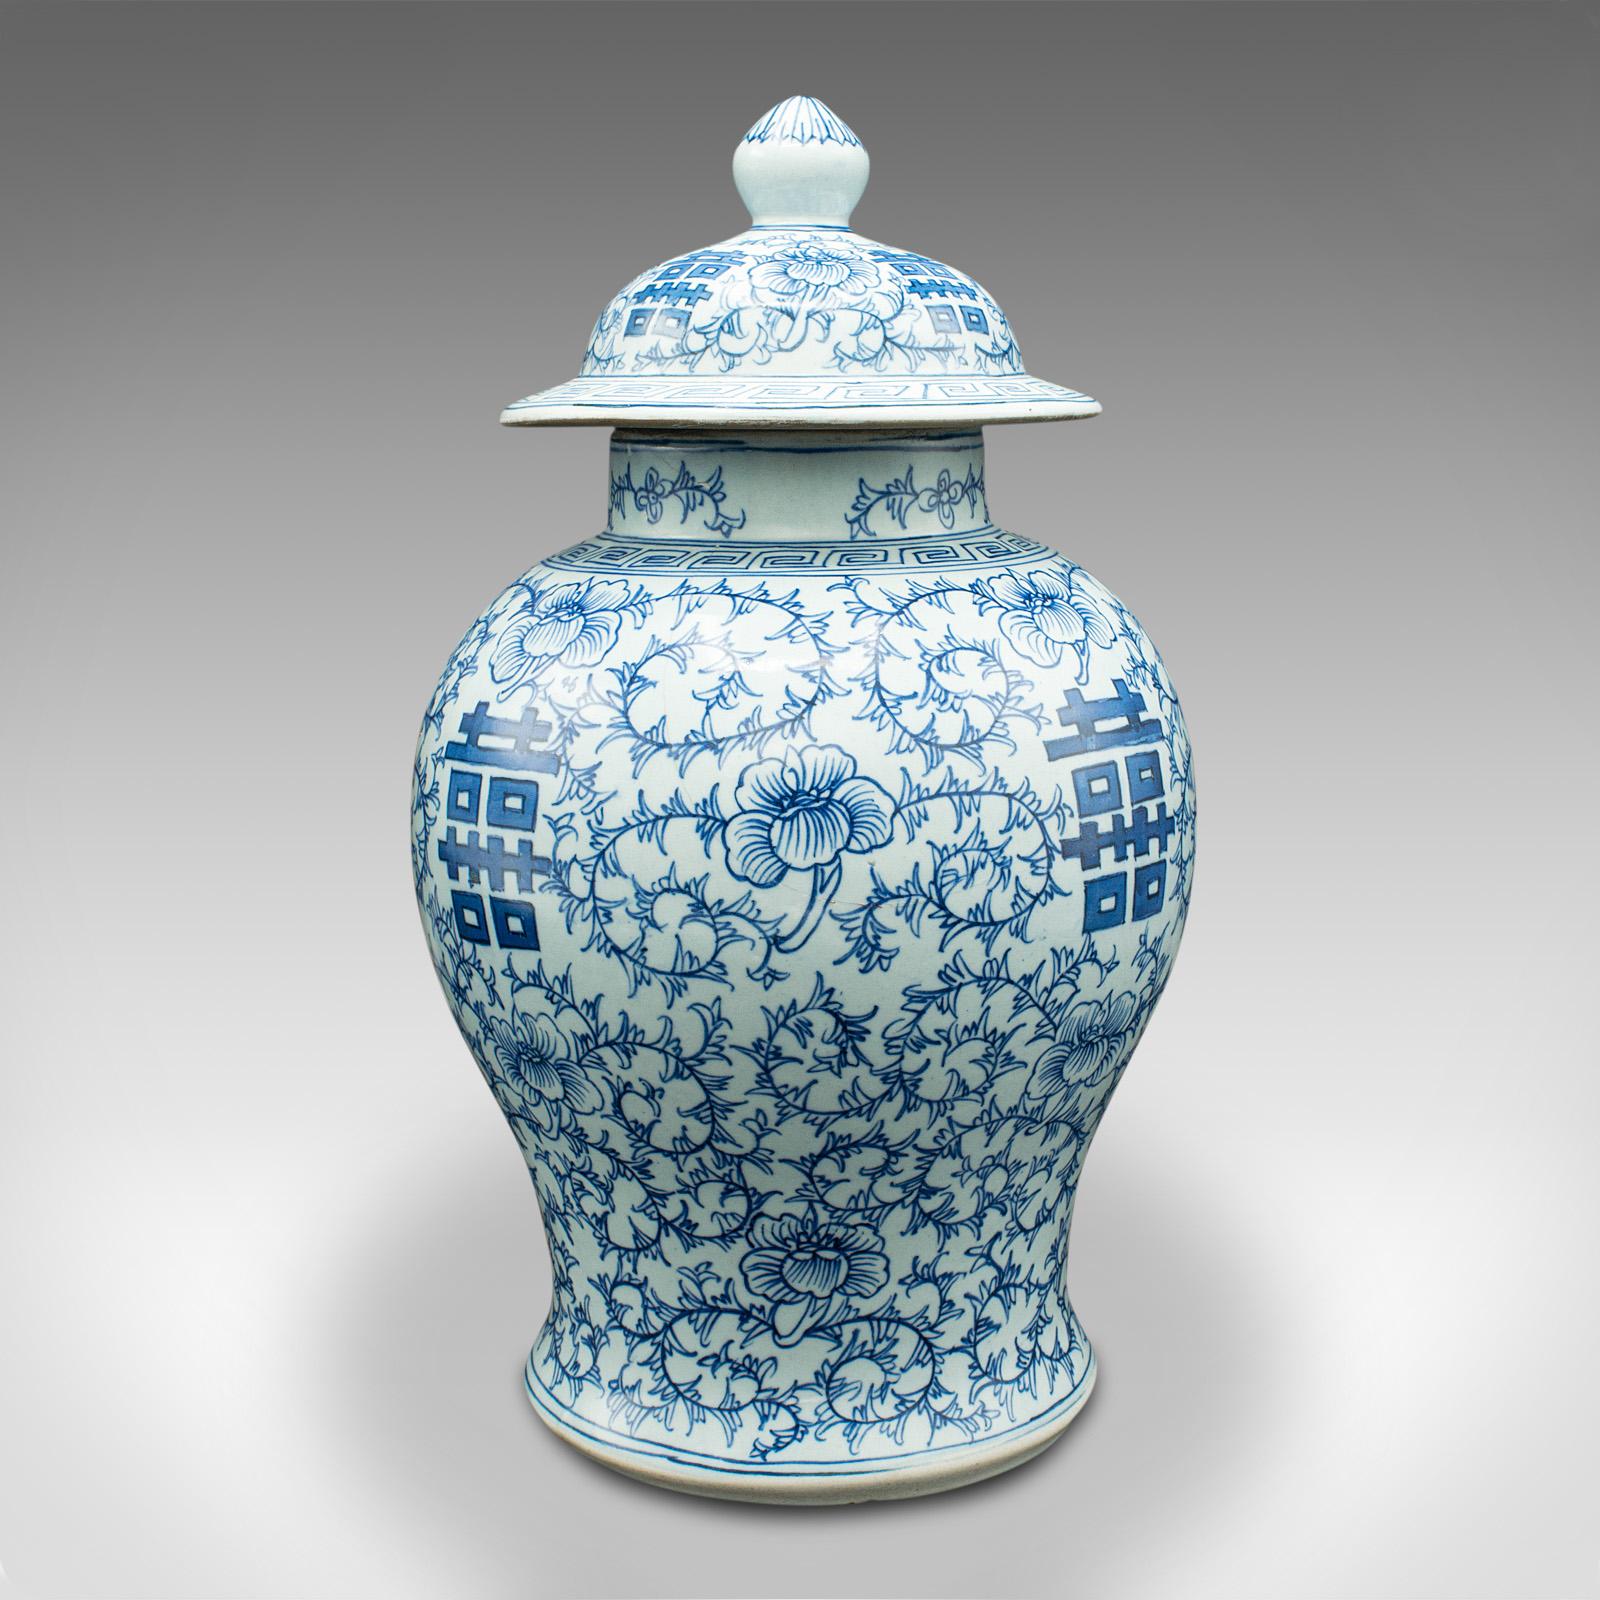 Vintage Decorative Baluster Urn, Chinese, Ceramic, Lidded Vase, Art Deco, C.1930 For Sale 1